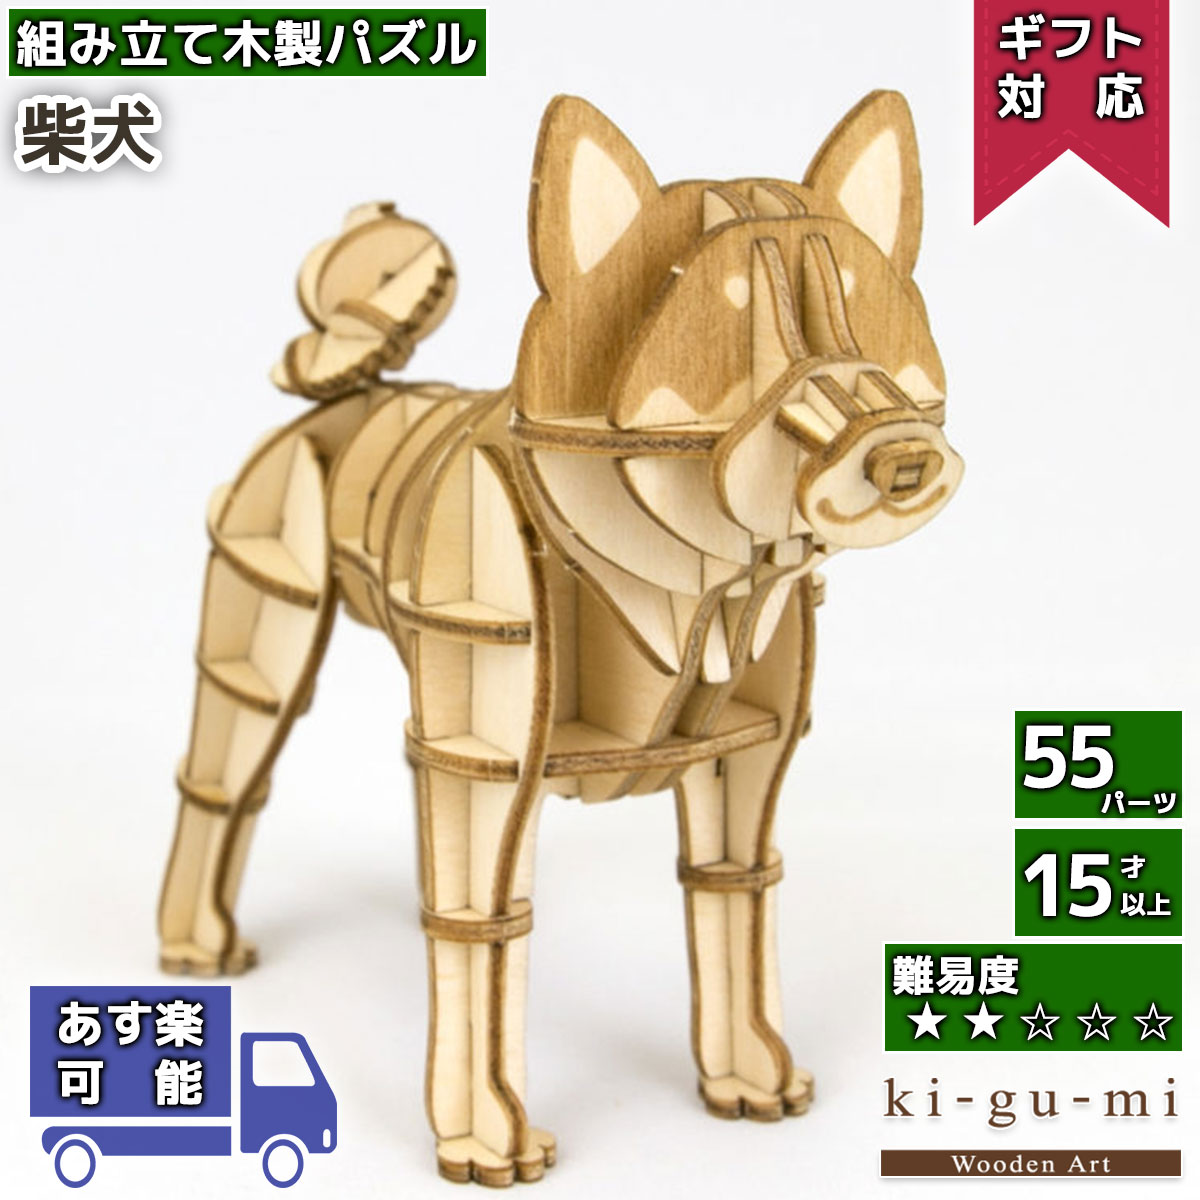 工作キット 柴犬 kigumi エーゾーン ウッドパズル 立体パズル 木製 大人 手作り 自由研究 キット 工作 父の日ギフト プレゼント